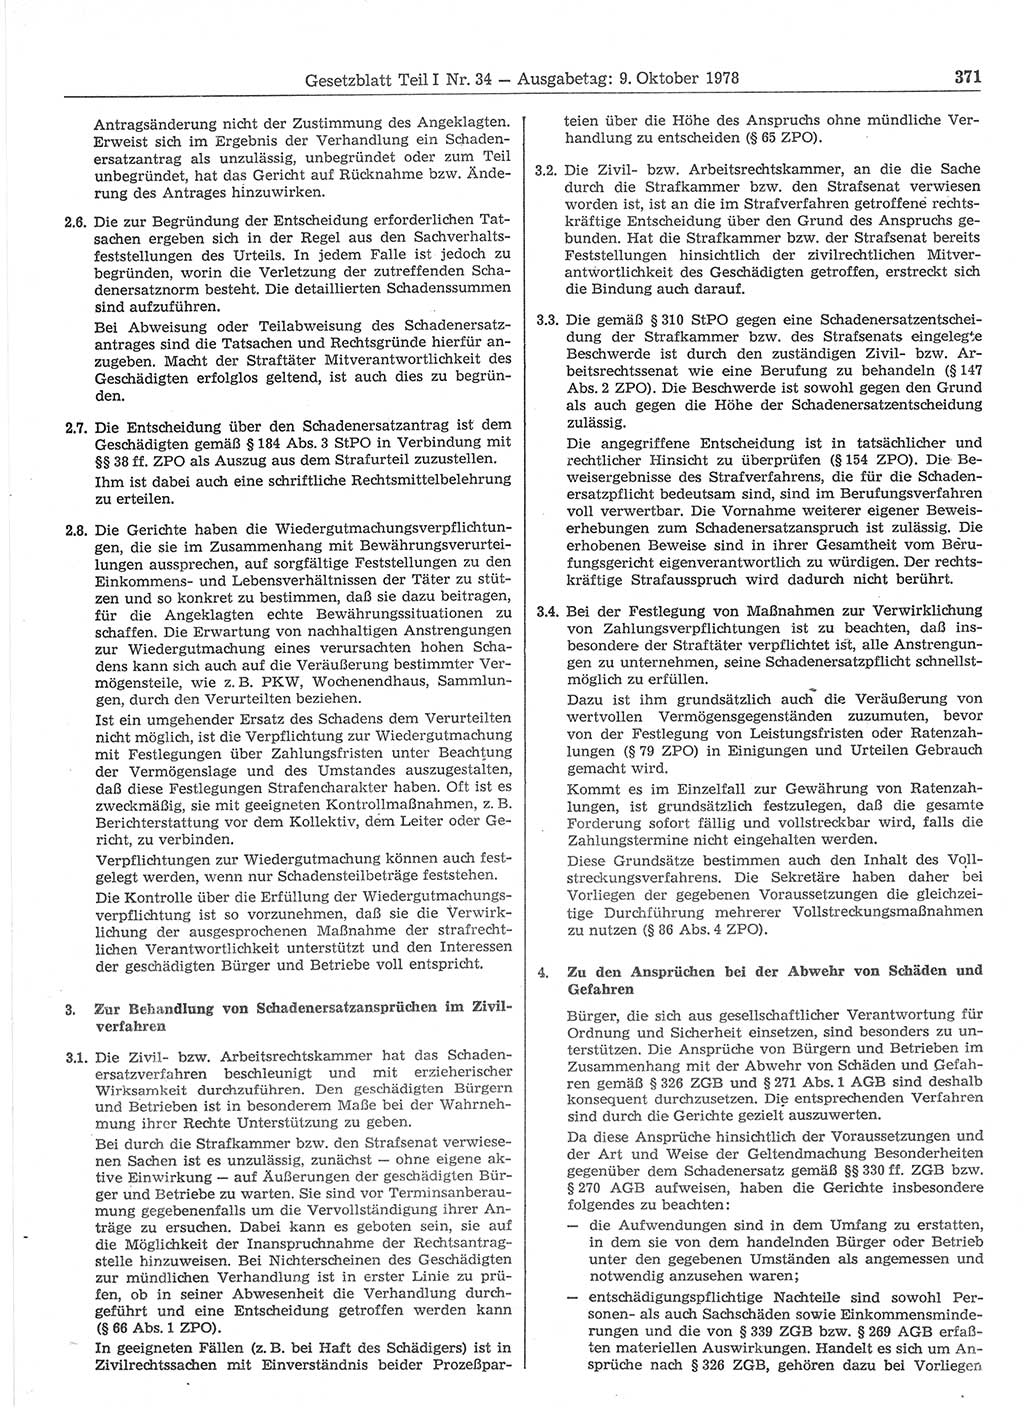 Gesetzblatt (GBl.) der Deutschen Demokratischen Republik (DDR) Teil Ⅰ 1978, Seite 371 (GBl. DDR Ⅰ 1978, S. 371)